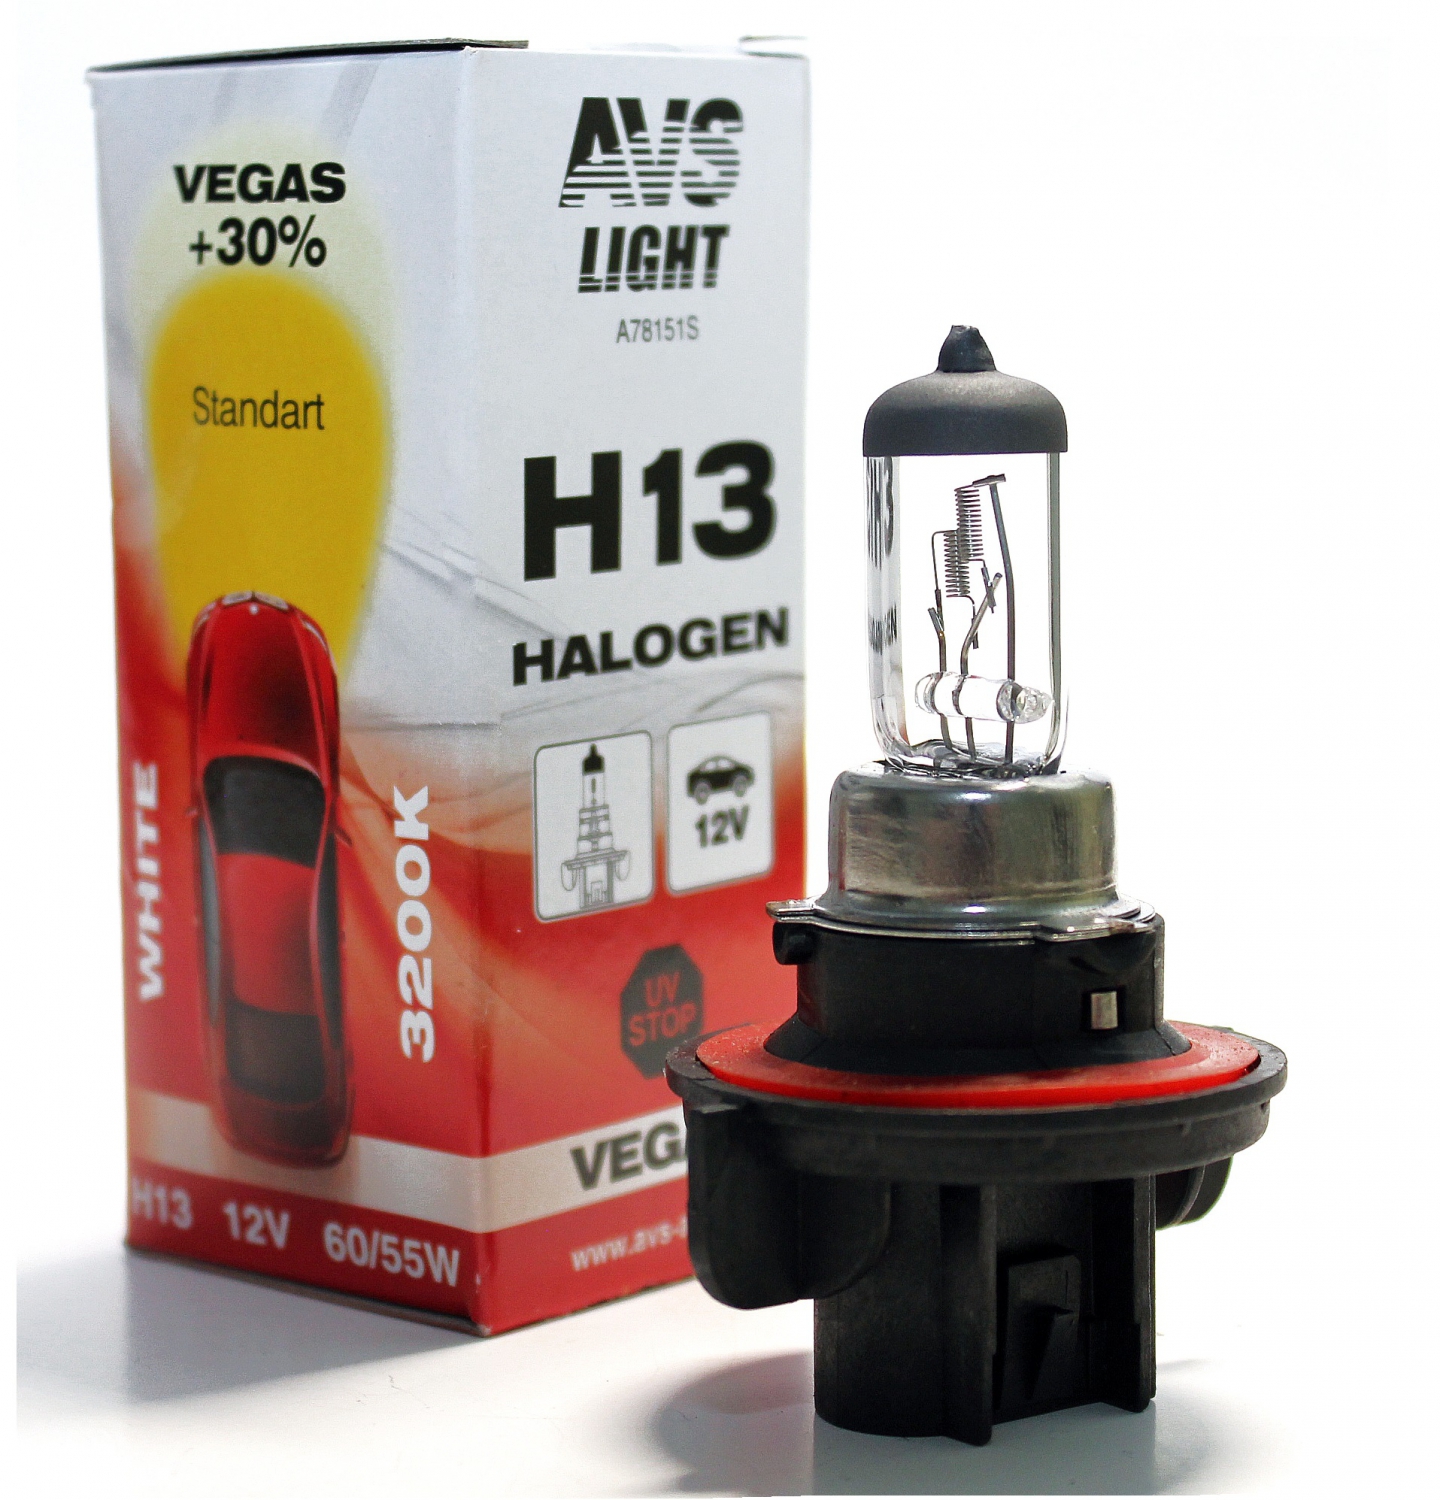 Лампа галогенная AVS Vegas H13.12V.6055W (1 шт.)